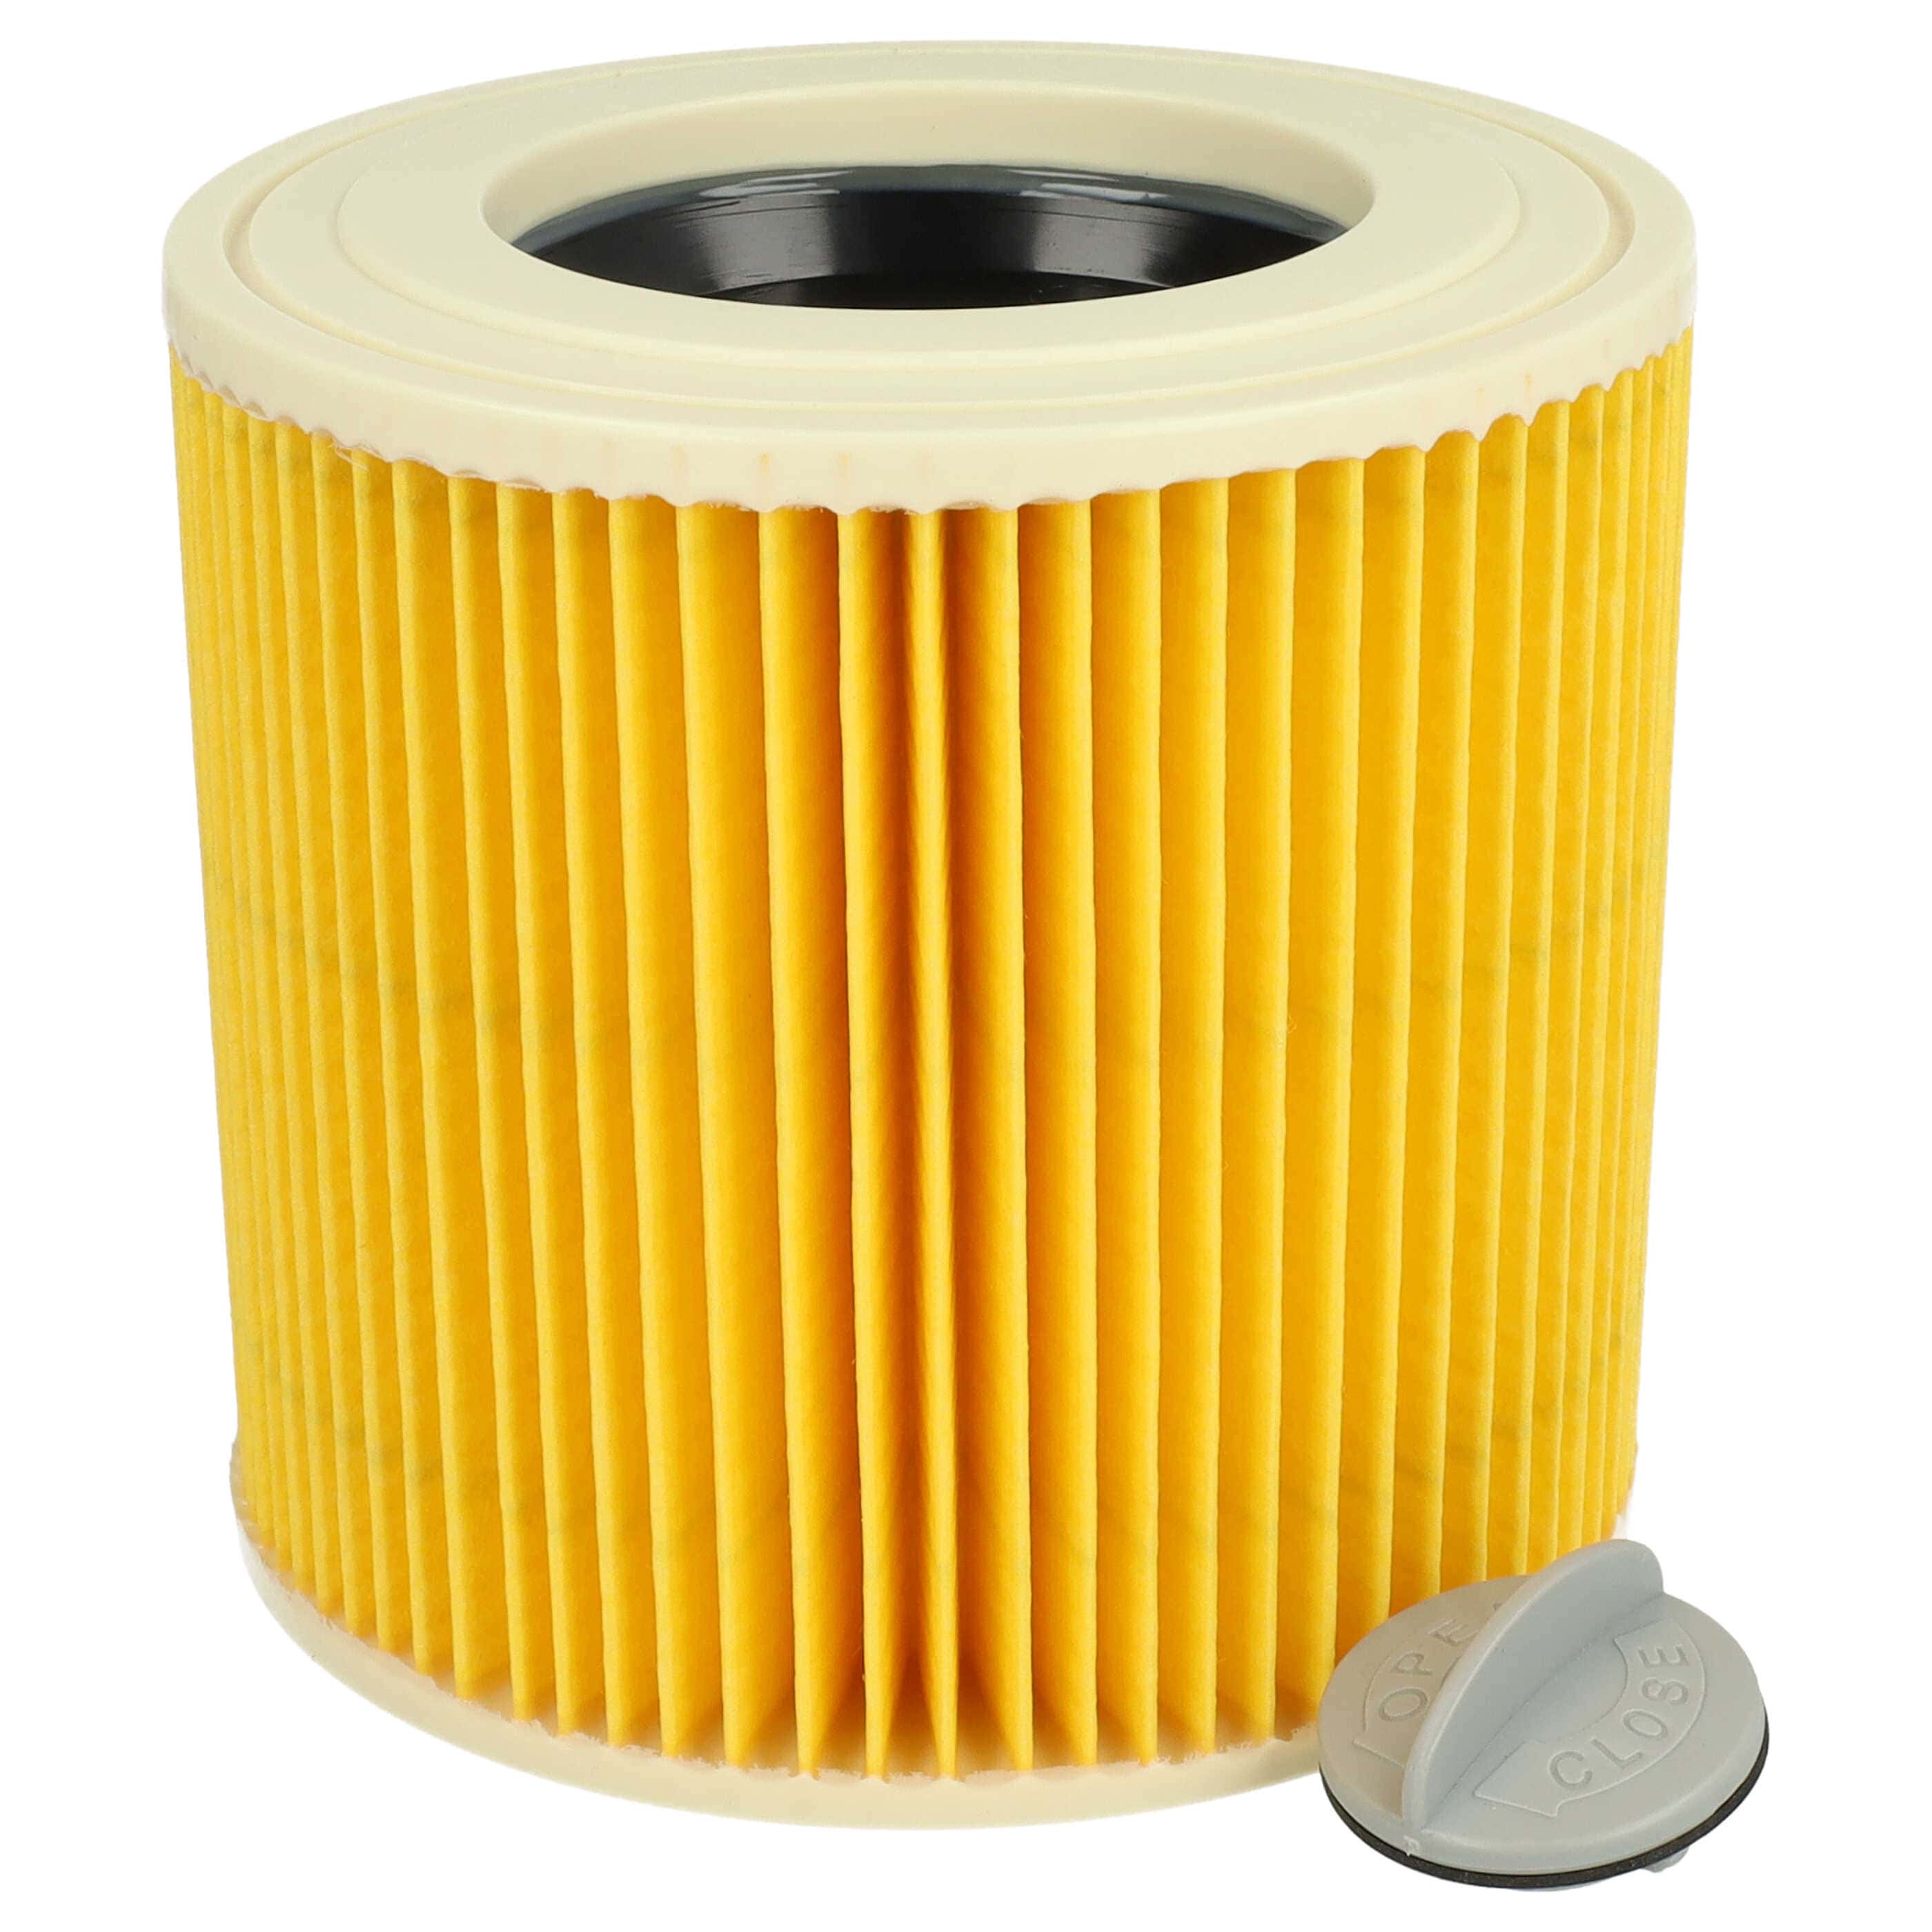 Patronen-Filter als Ersatz für Kärcher Staubsauger Filter 6.414-789.06.414-789 Filter